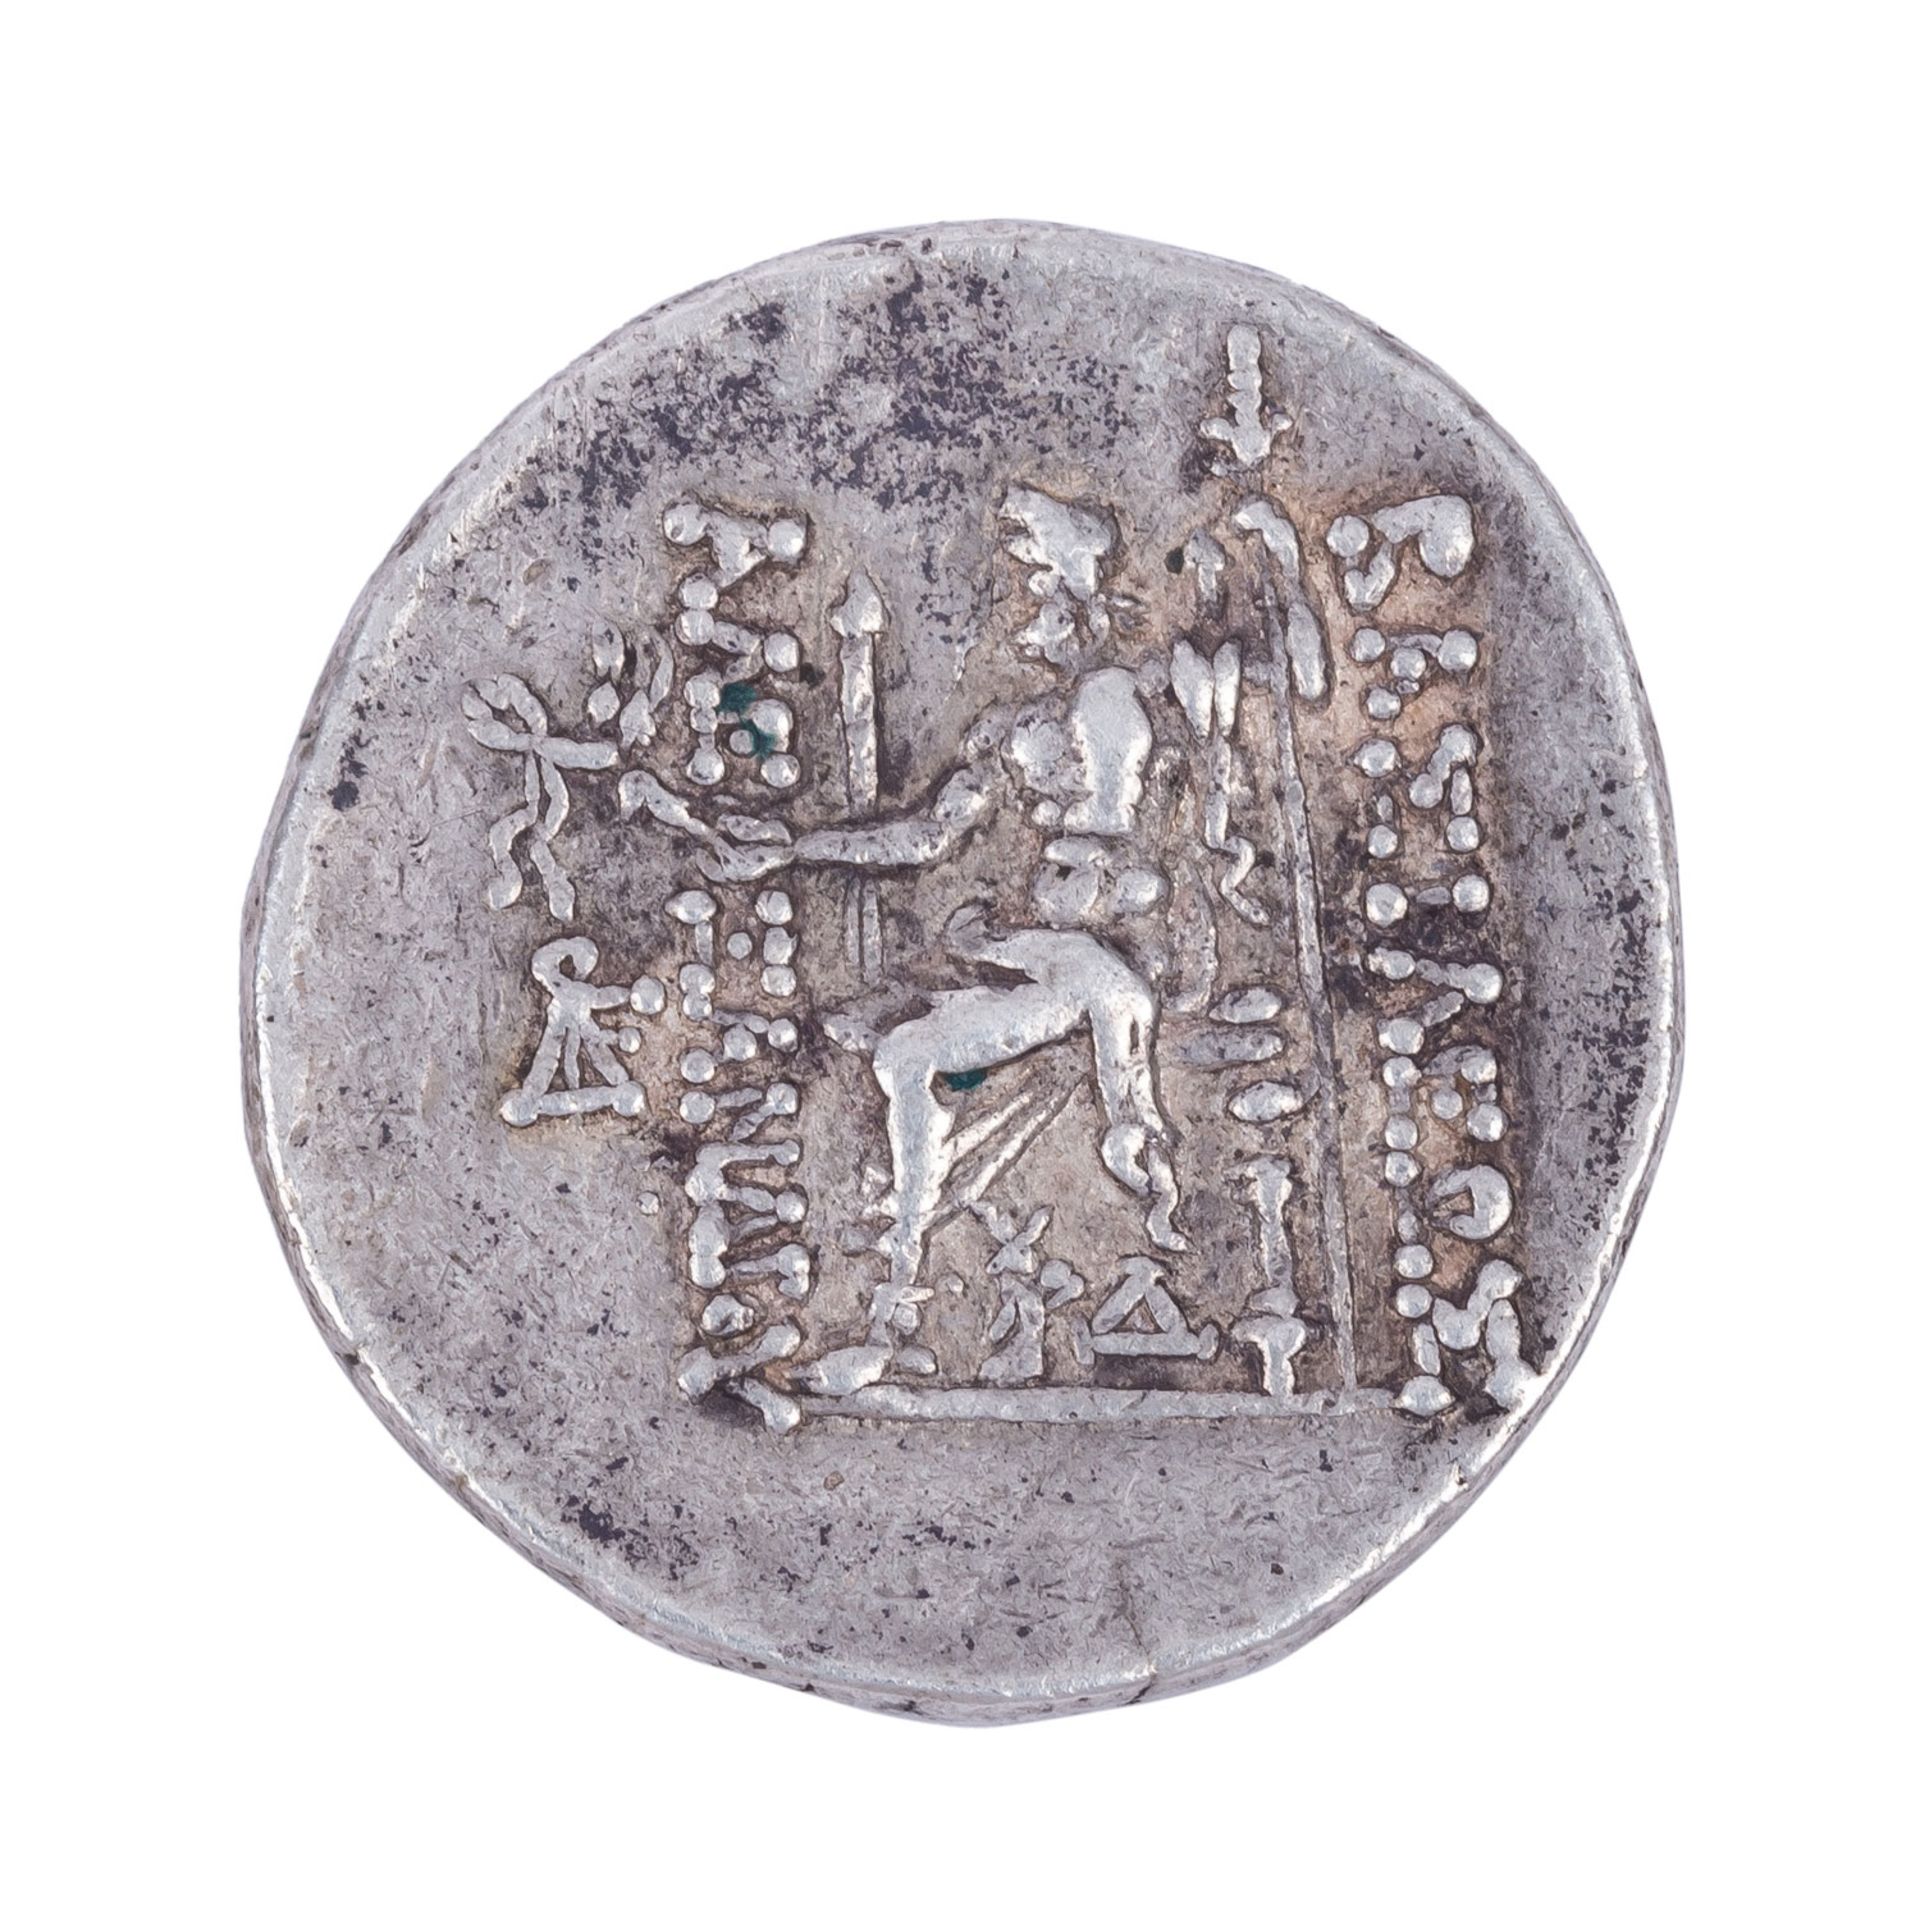 Syrien/Königreich der Seleukiden - Tetradrachme 2.Jh.v.Chr., - Image 2 of 3